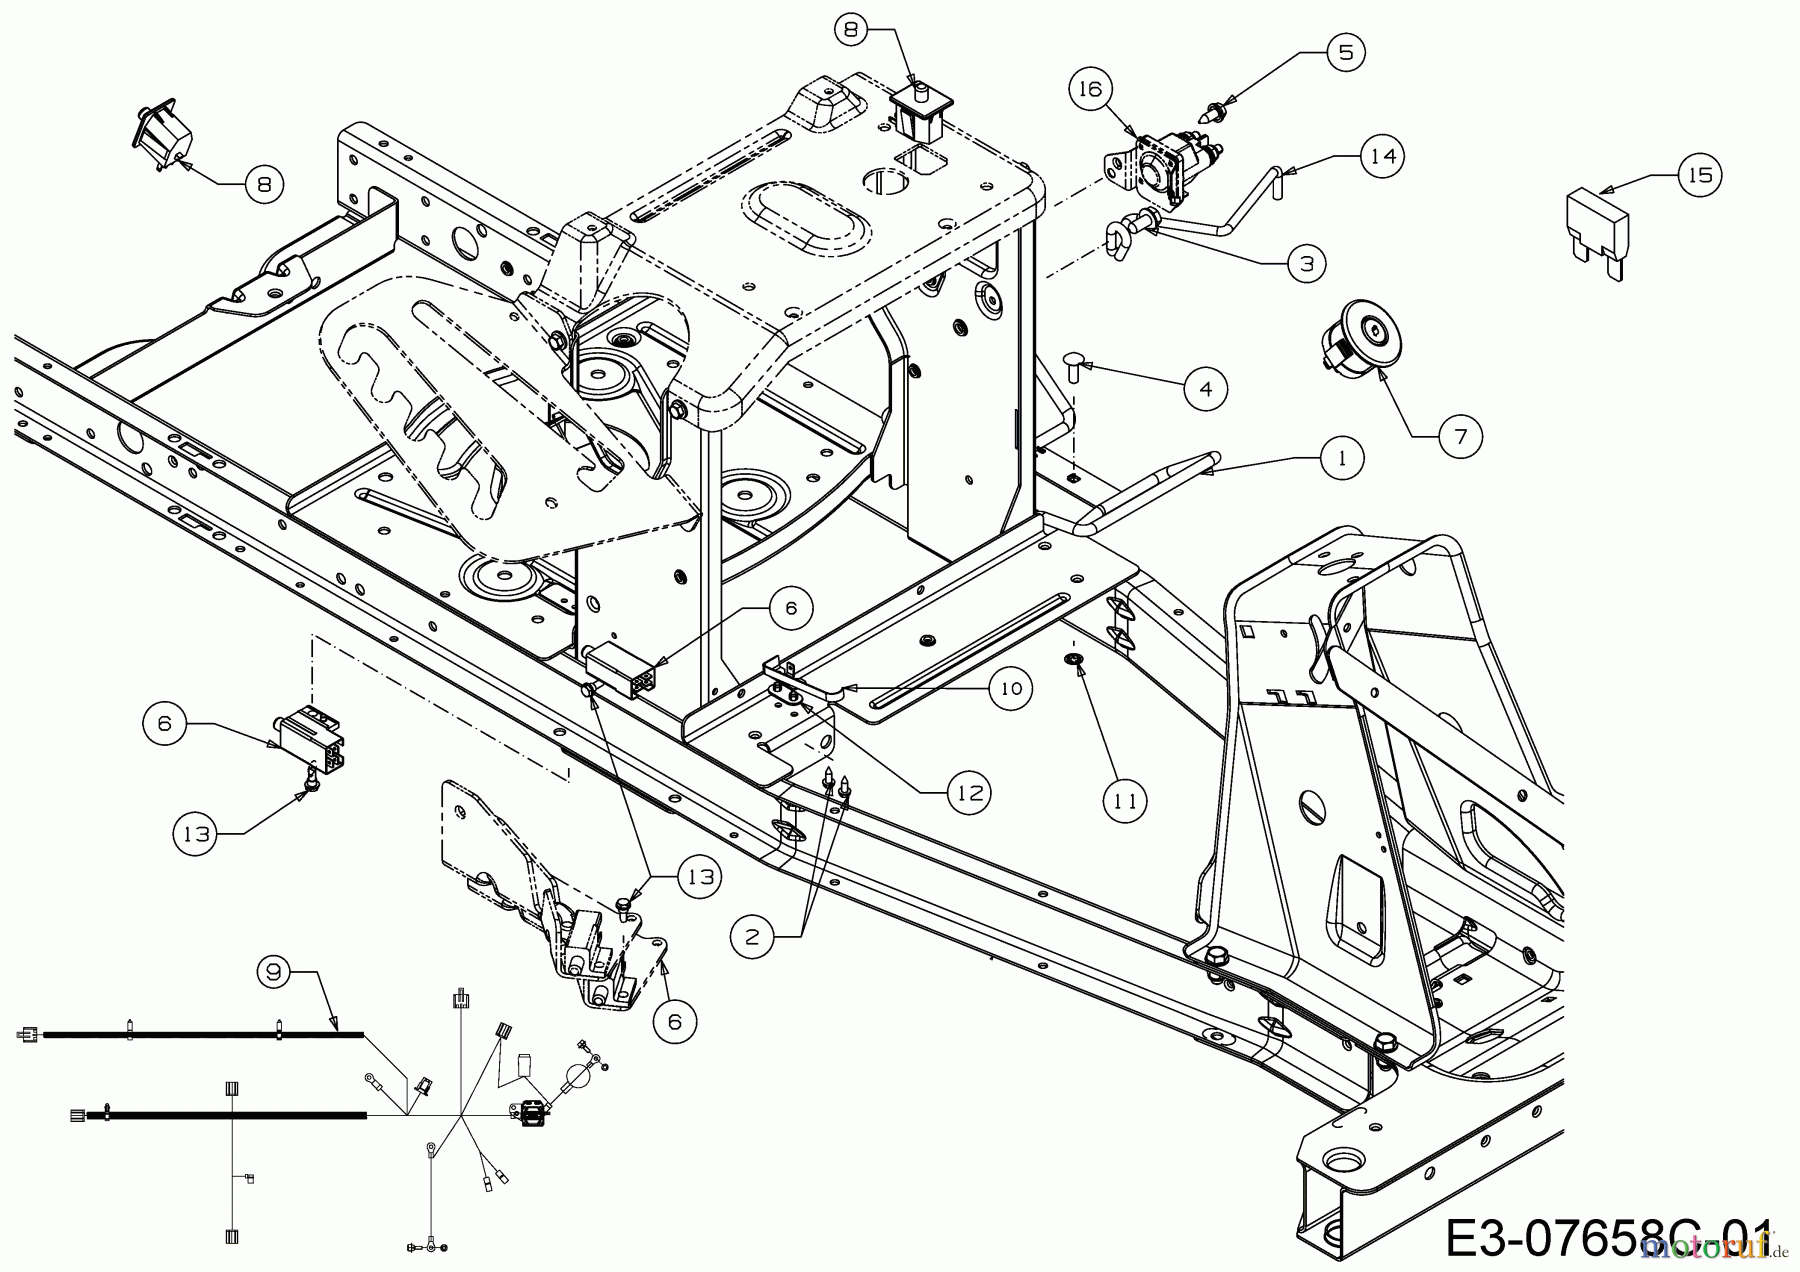  WOLF-Garten Expert Rasentraktoren Scooter Pro 13B226HD650  (2015) Elektroteile